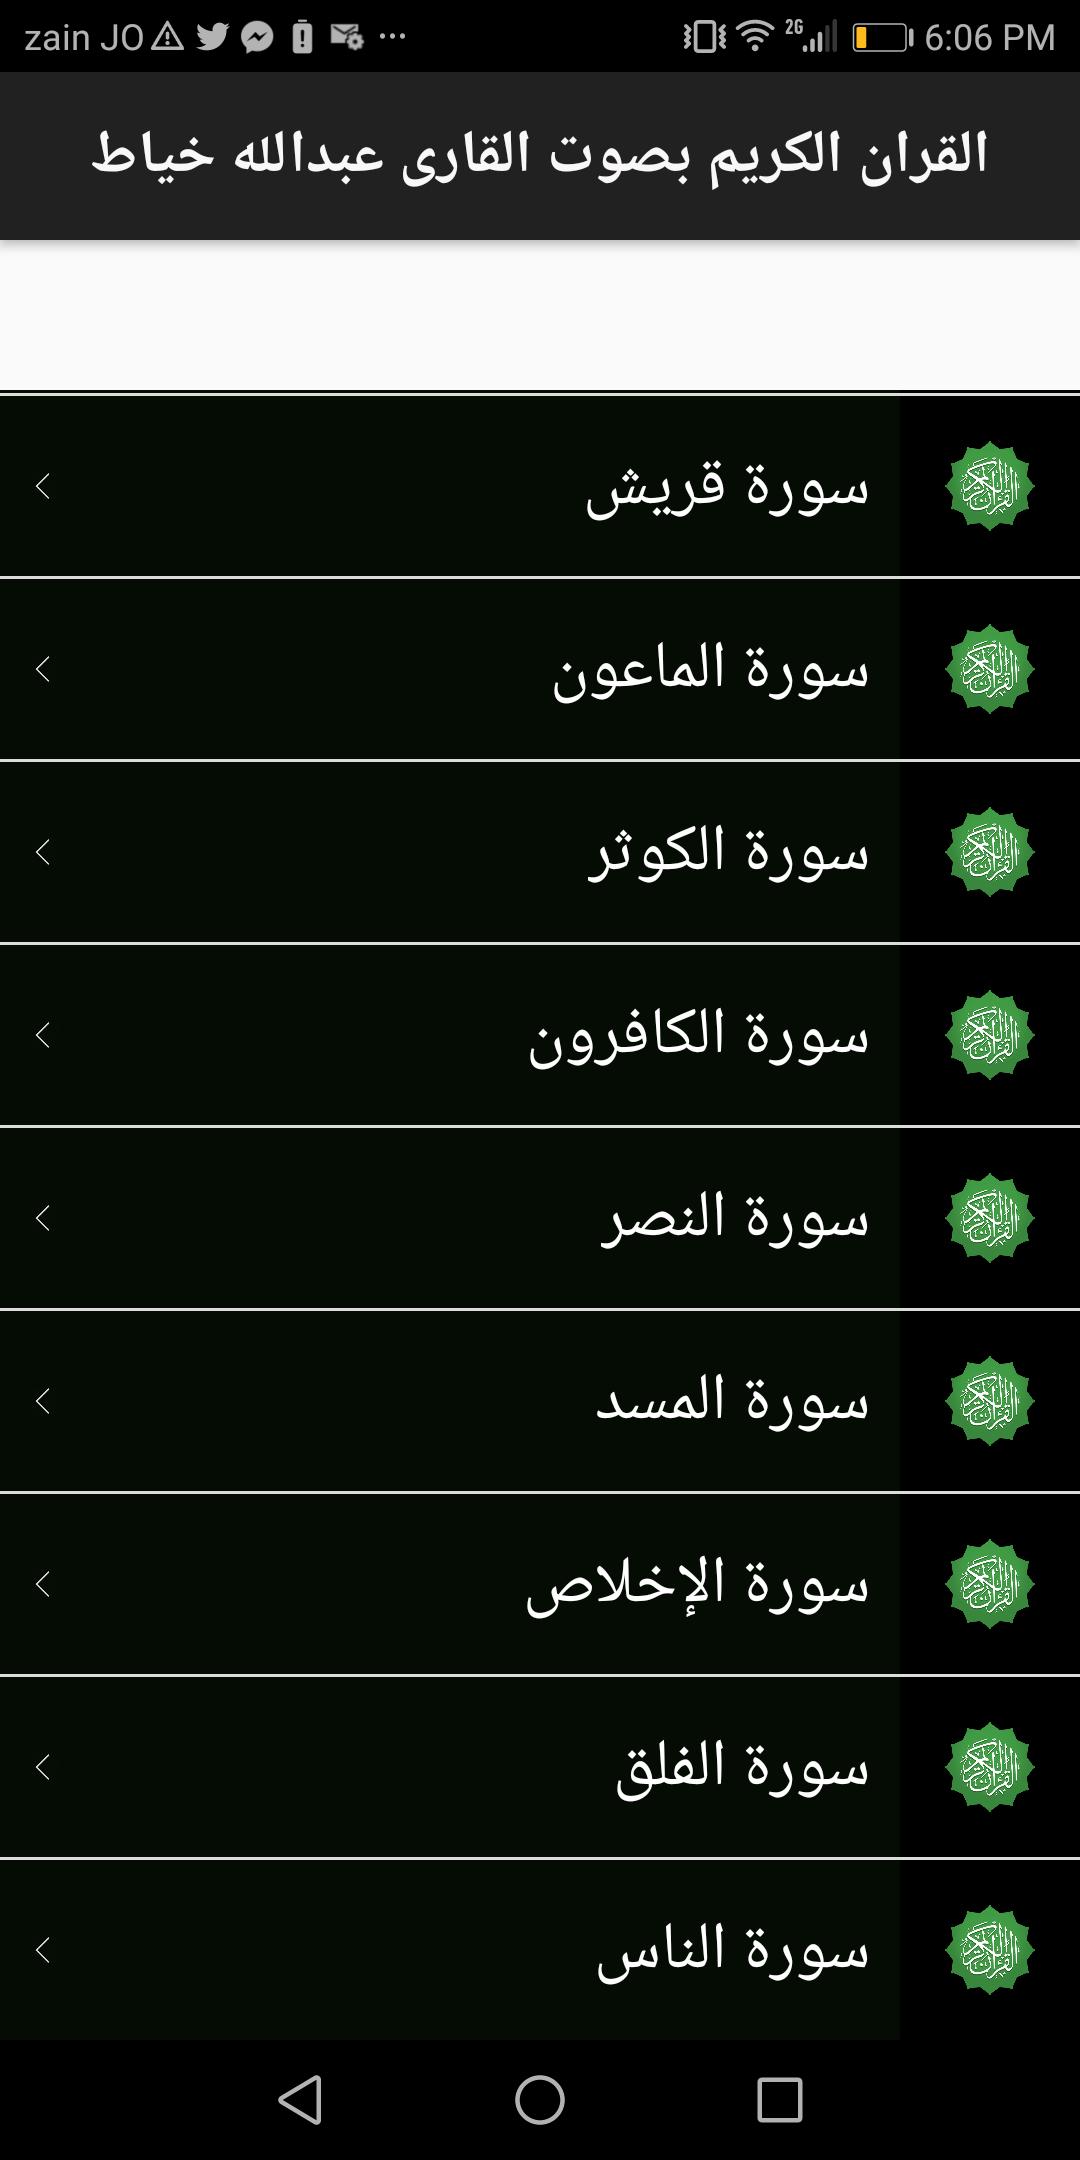 القرآن الكريم المصحف الالكتروني جامعة الملك سعود Para Android Apk Baixar